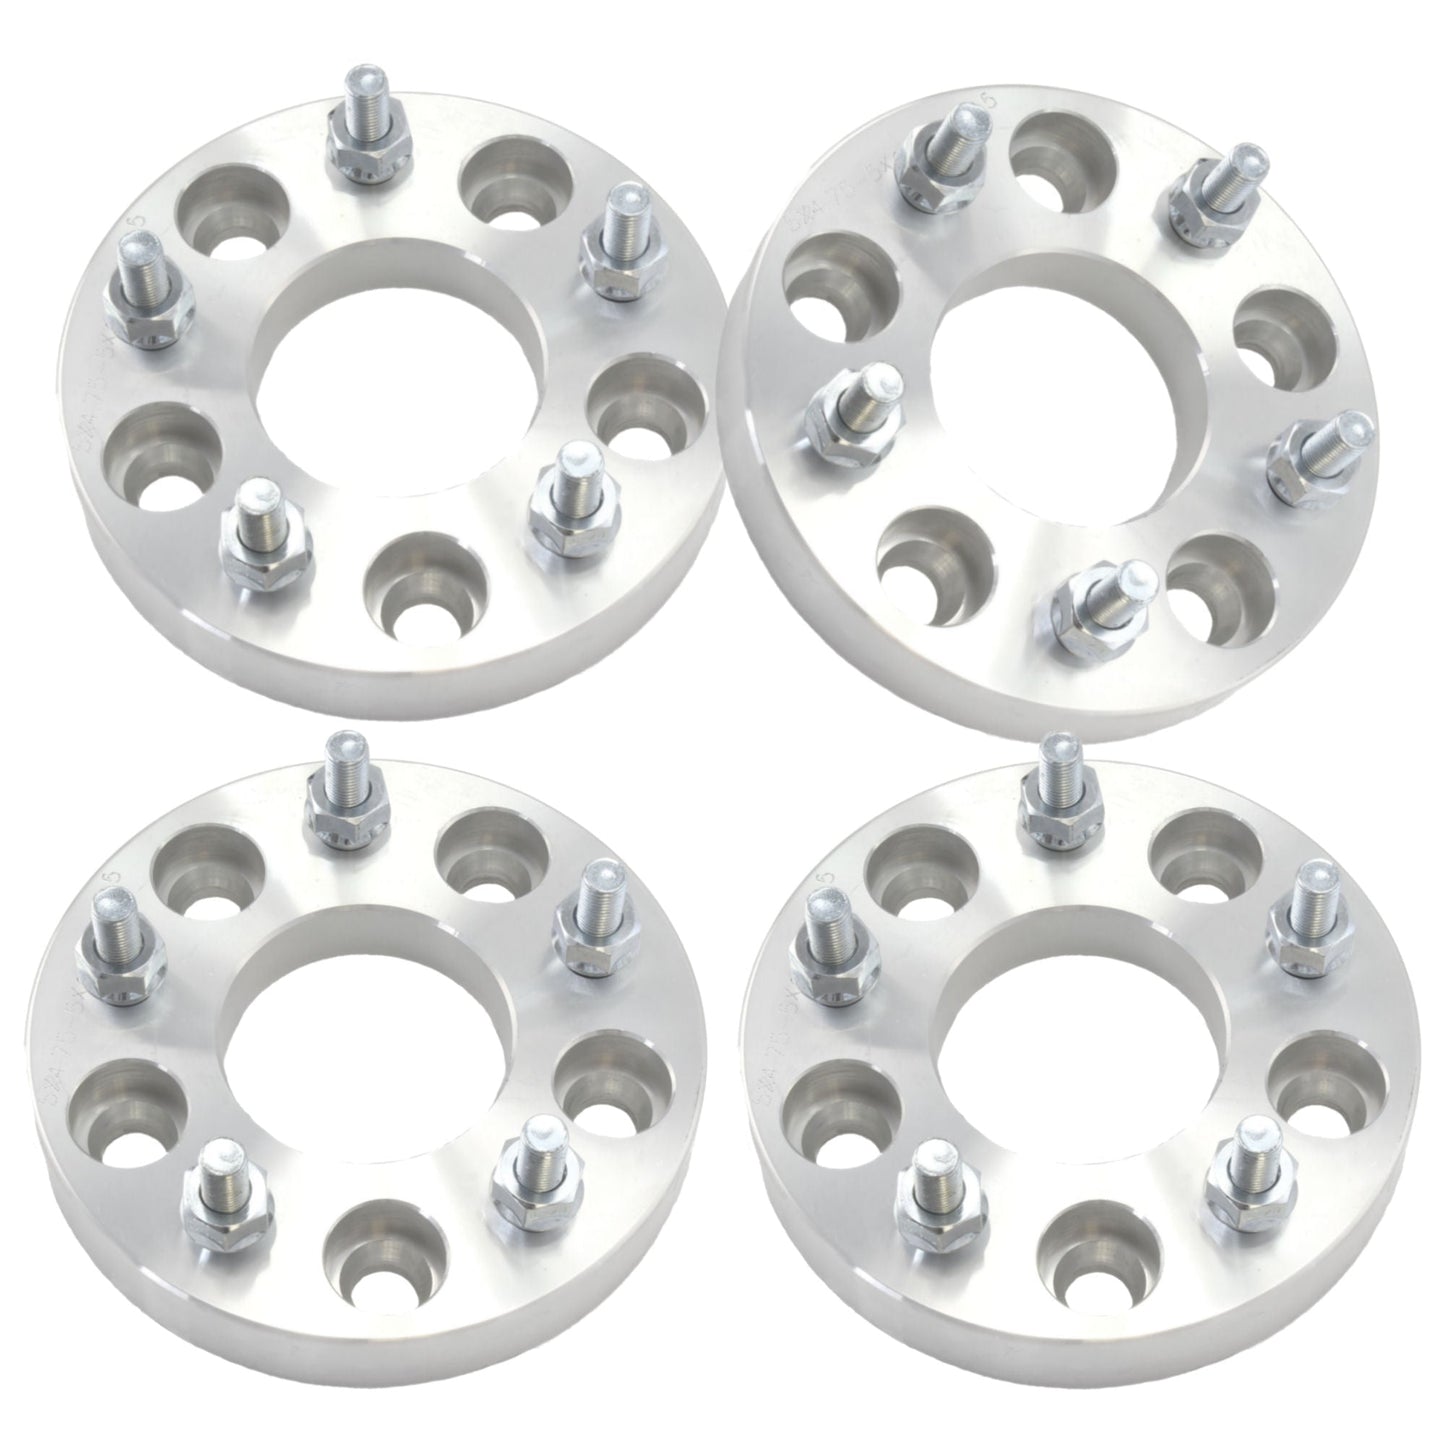 1.5" (38mm) Titan Wheel Spacers for Nissan Infiniti Subaru | 5x114.3 (5x4.5) | 12x1.25 Studs | Set of 4 | Titan Wheel Accessories